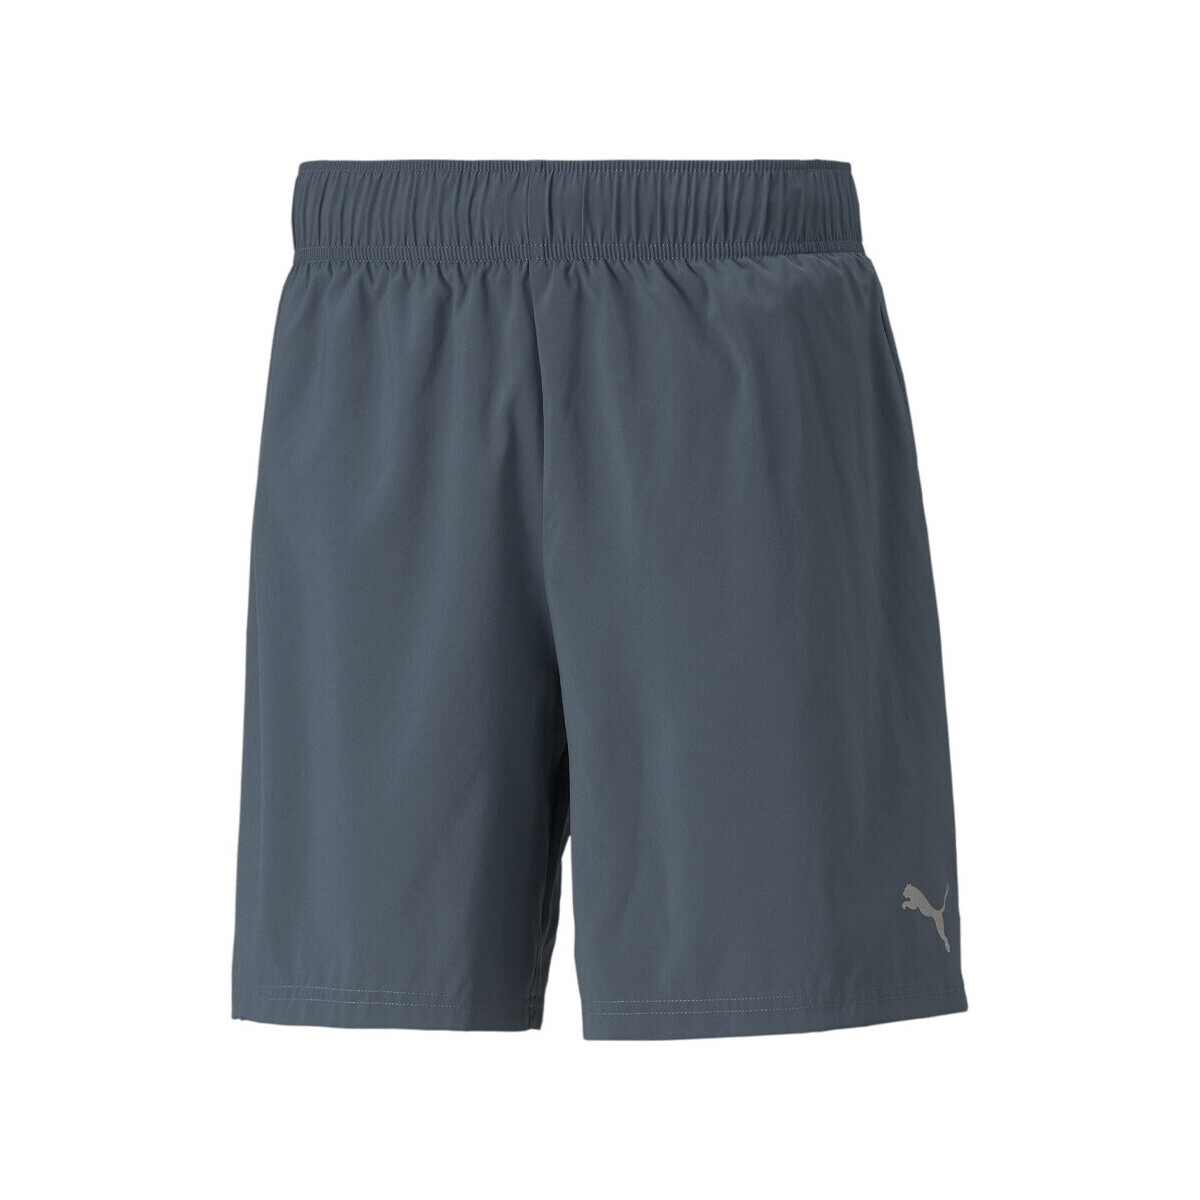 Vêtements Homme Shorts / Bermudas Puma 521351-42 Gris